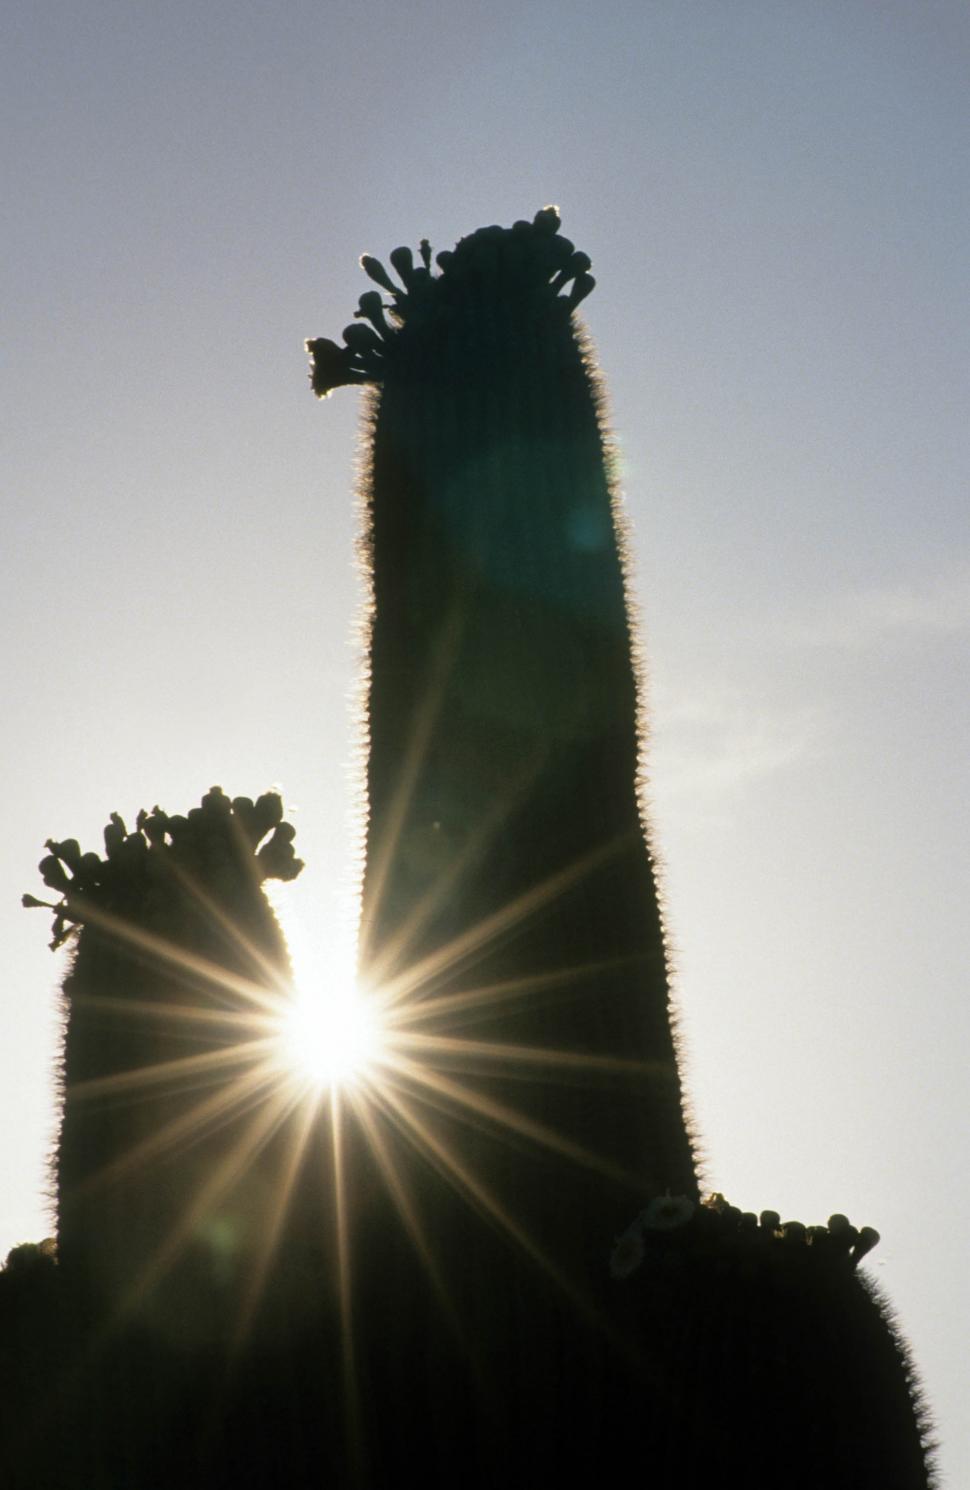 Free Image of Saguaro cactus silhouette 